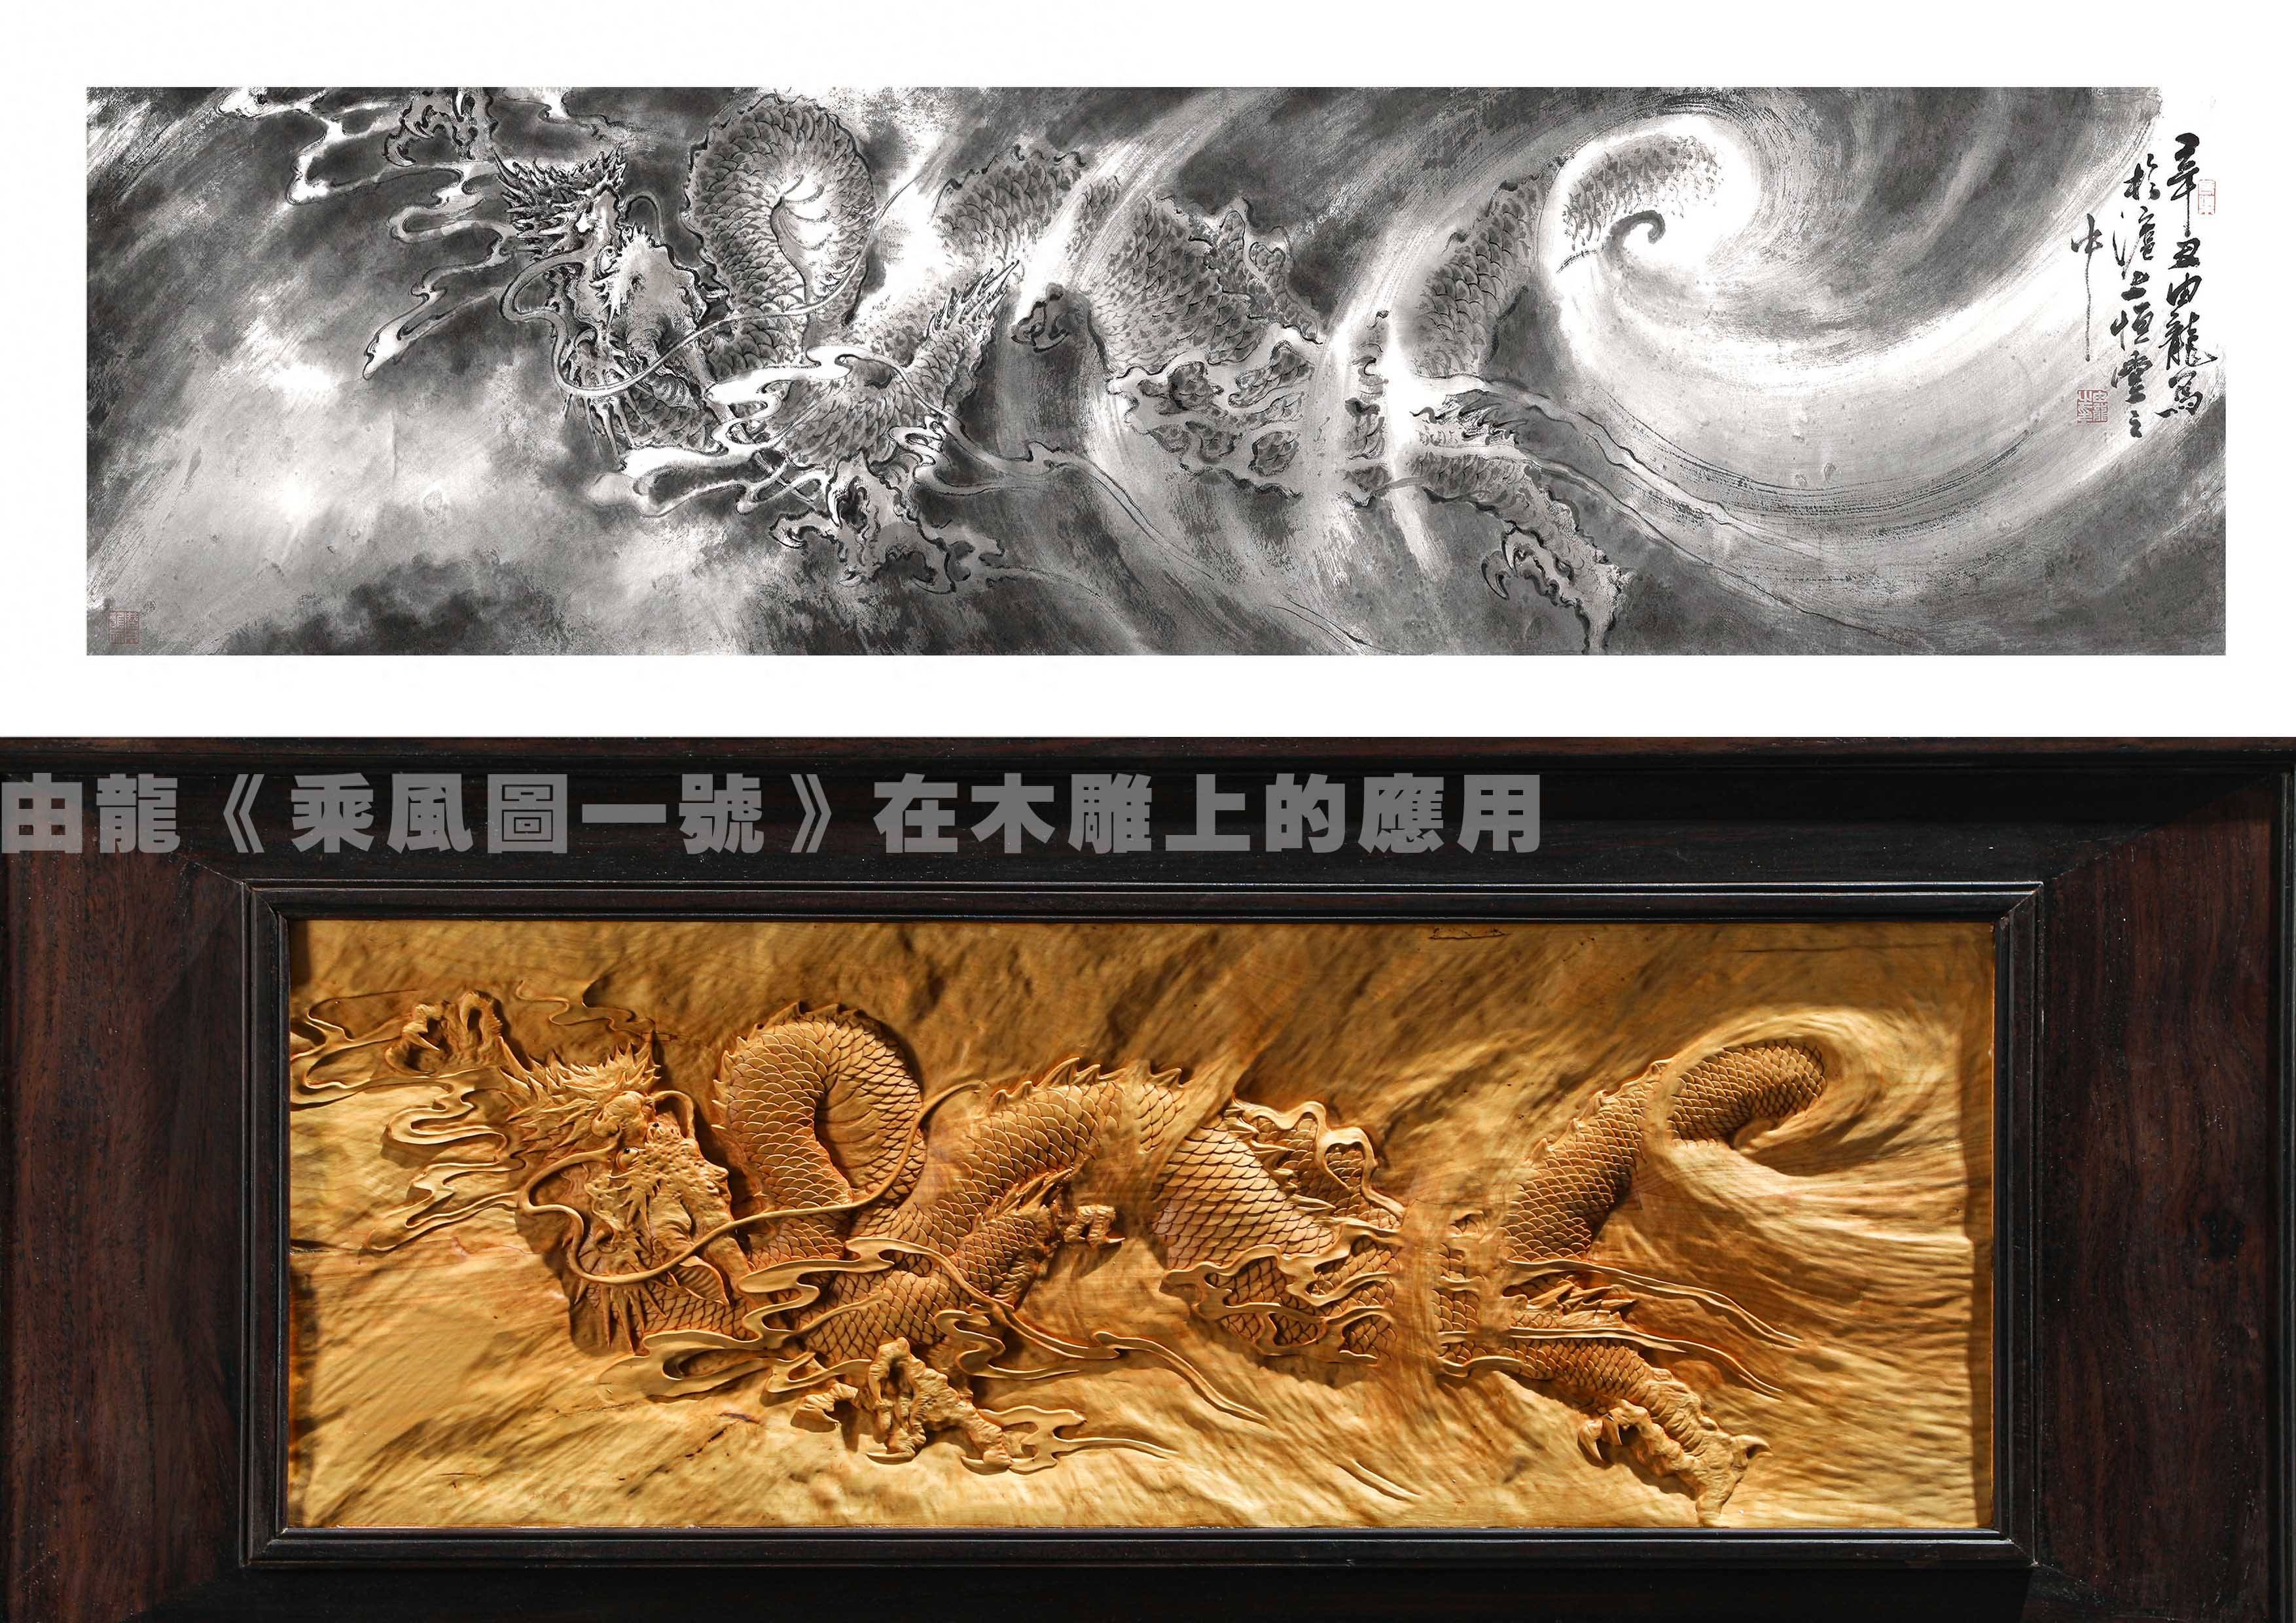 由龙：中华民族龙纹研究与工艺艺术品应用-环球科技热点